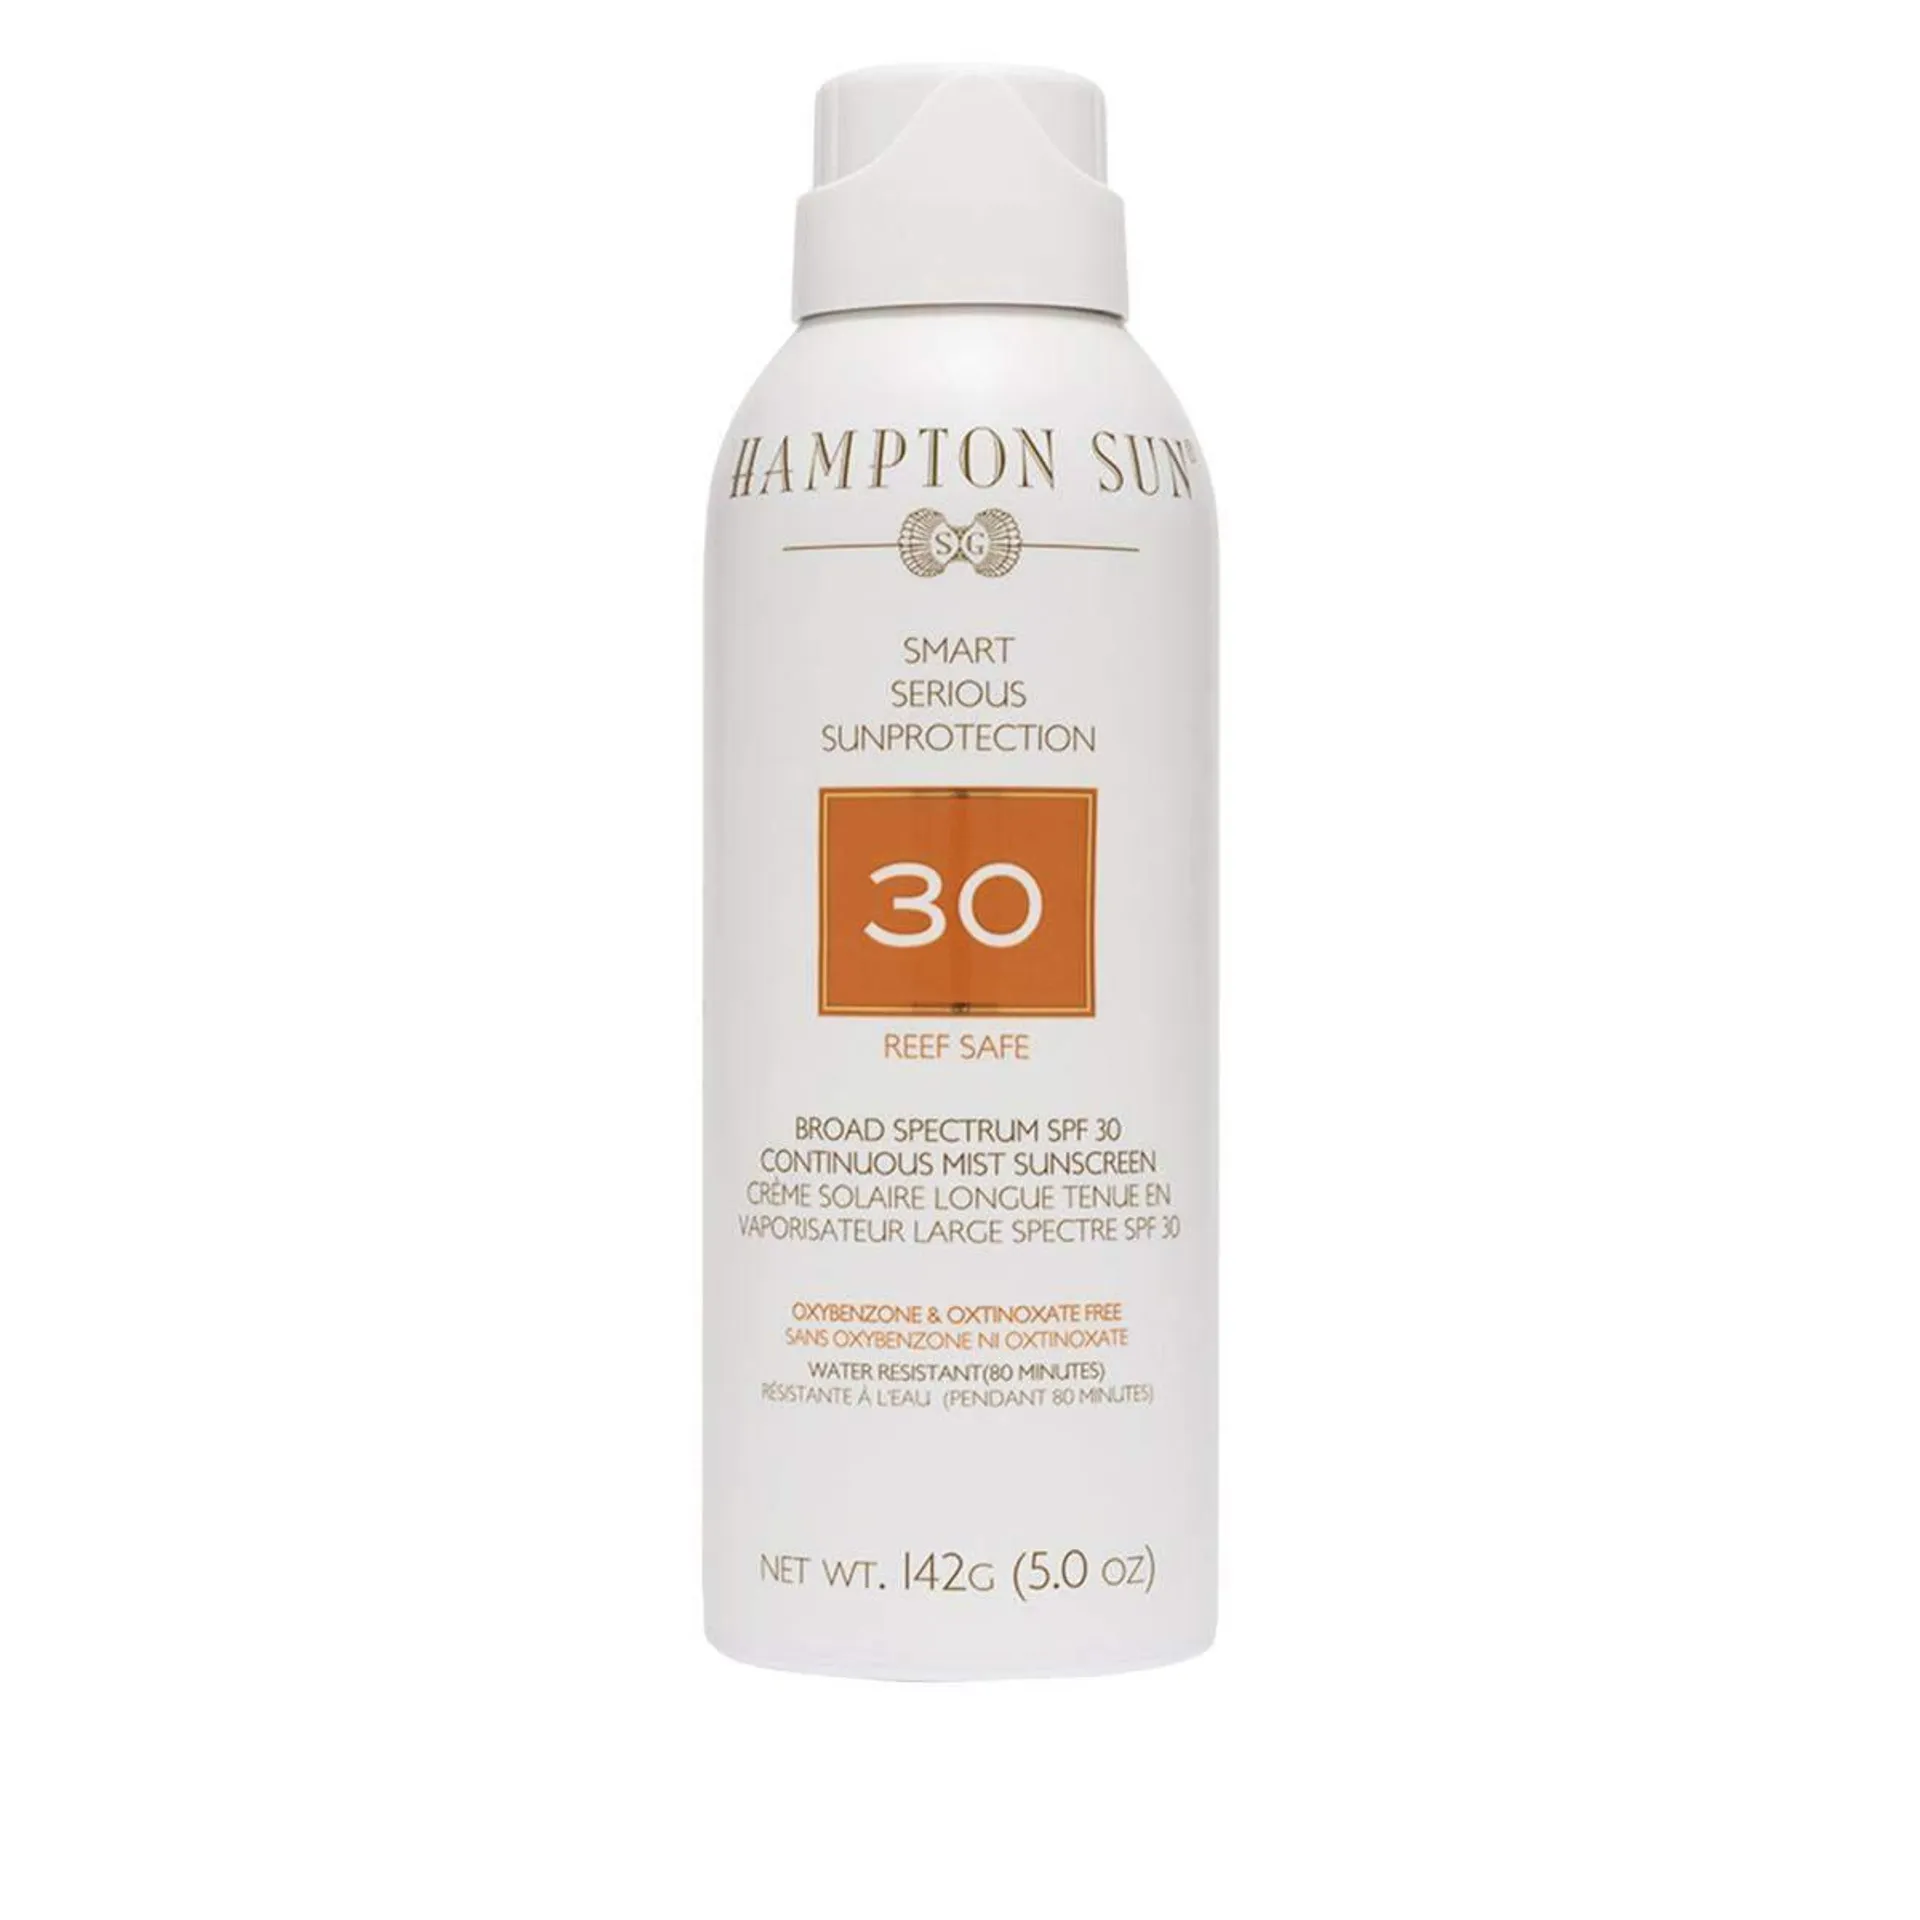 Hampton Sun Broad Spectrum SPF 30 Continuous Mist Sunscreen